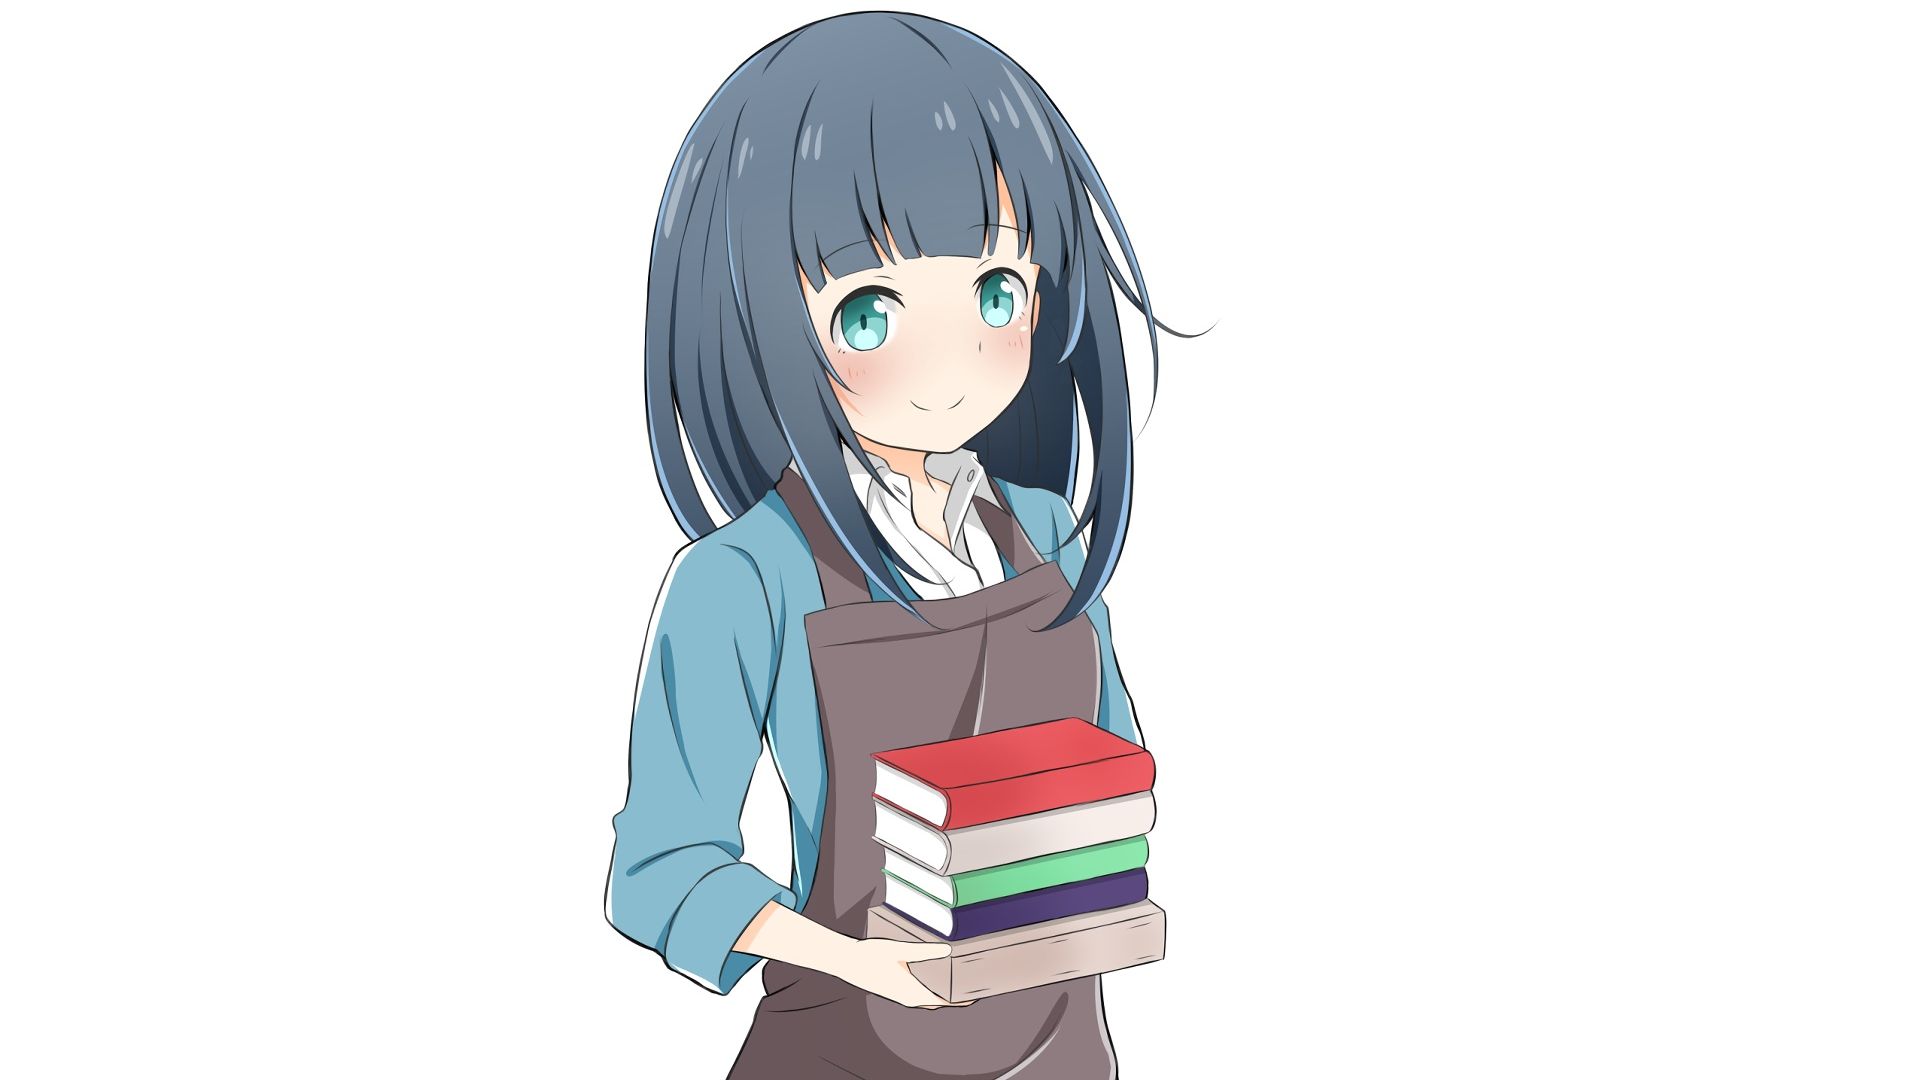 Wallpaper Takasago Tomoe, EroManga-Sensei, cute anime with books anime girl